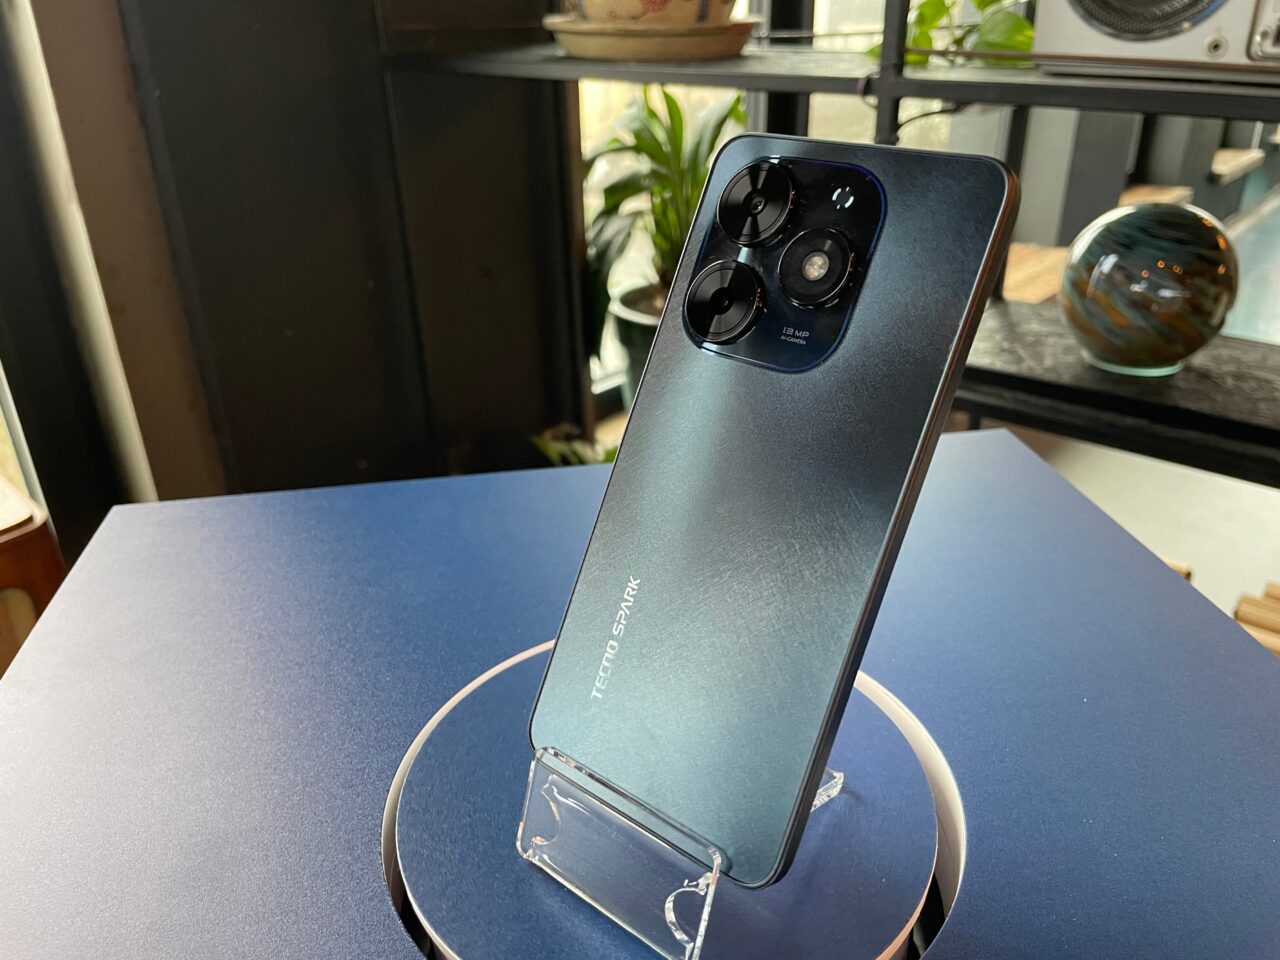 tecno spark go 2024. Smartfon marki Tecno Spark stojący na plastikowym stojaku umieszczonym na niebieskim blacie, z widocznym tylnym aparatem fotograficznym i logo producenta.